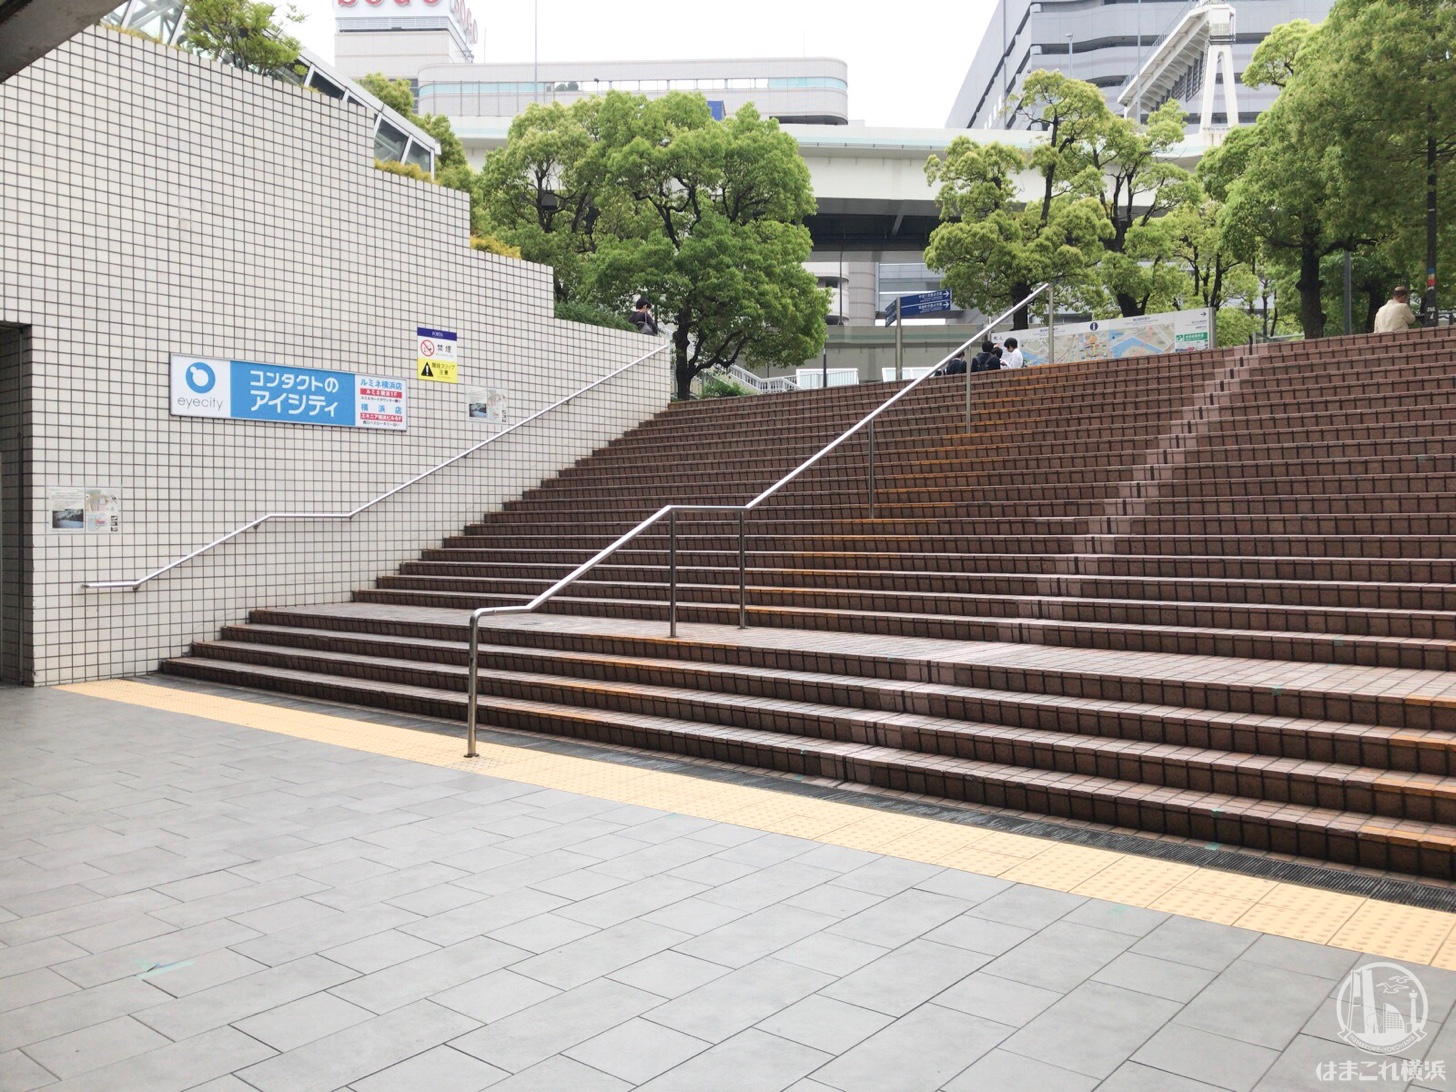 横浜駅東口 中央通路と駅前広場を繋ぐ階段にエスカレーター新設決定！